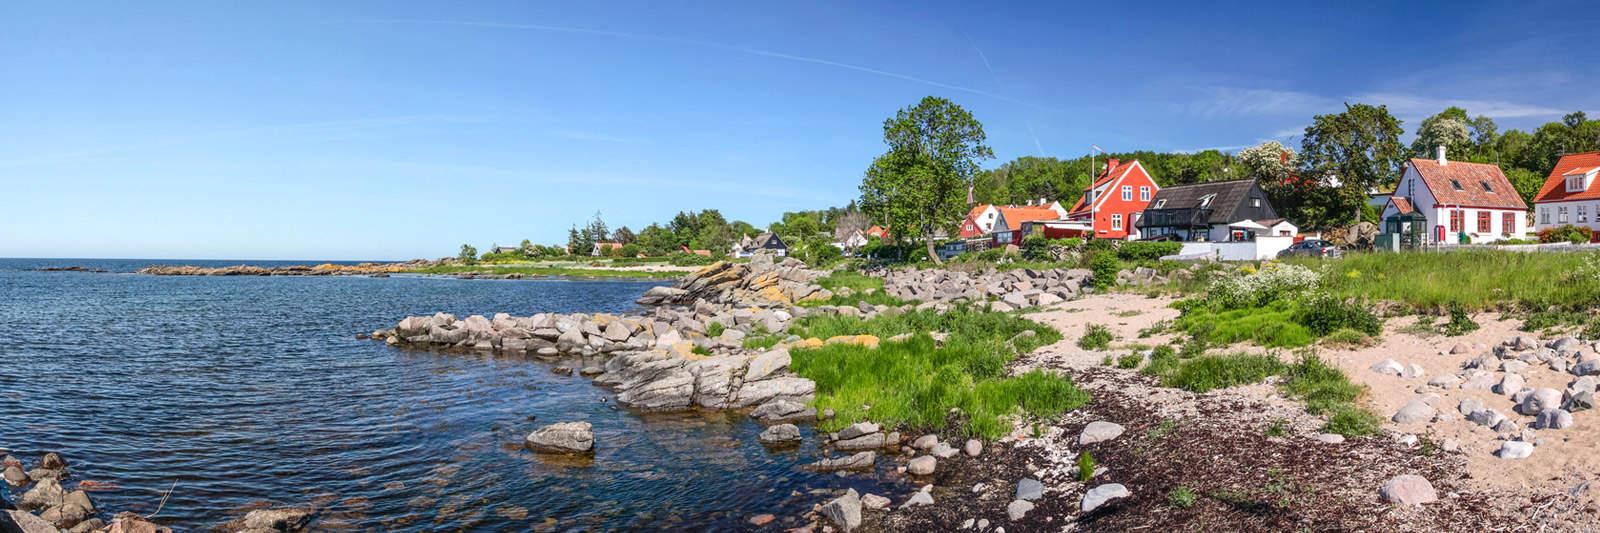 30 Ferienwohnungen und Ferienhäuser am Kjul Strand - tourist-online.de